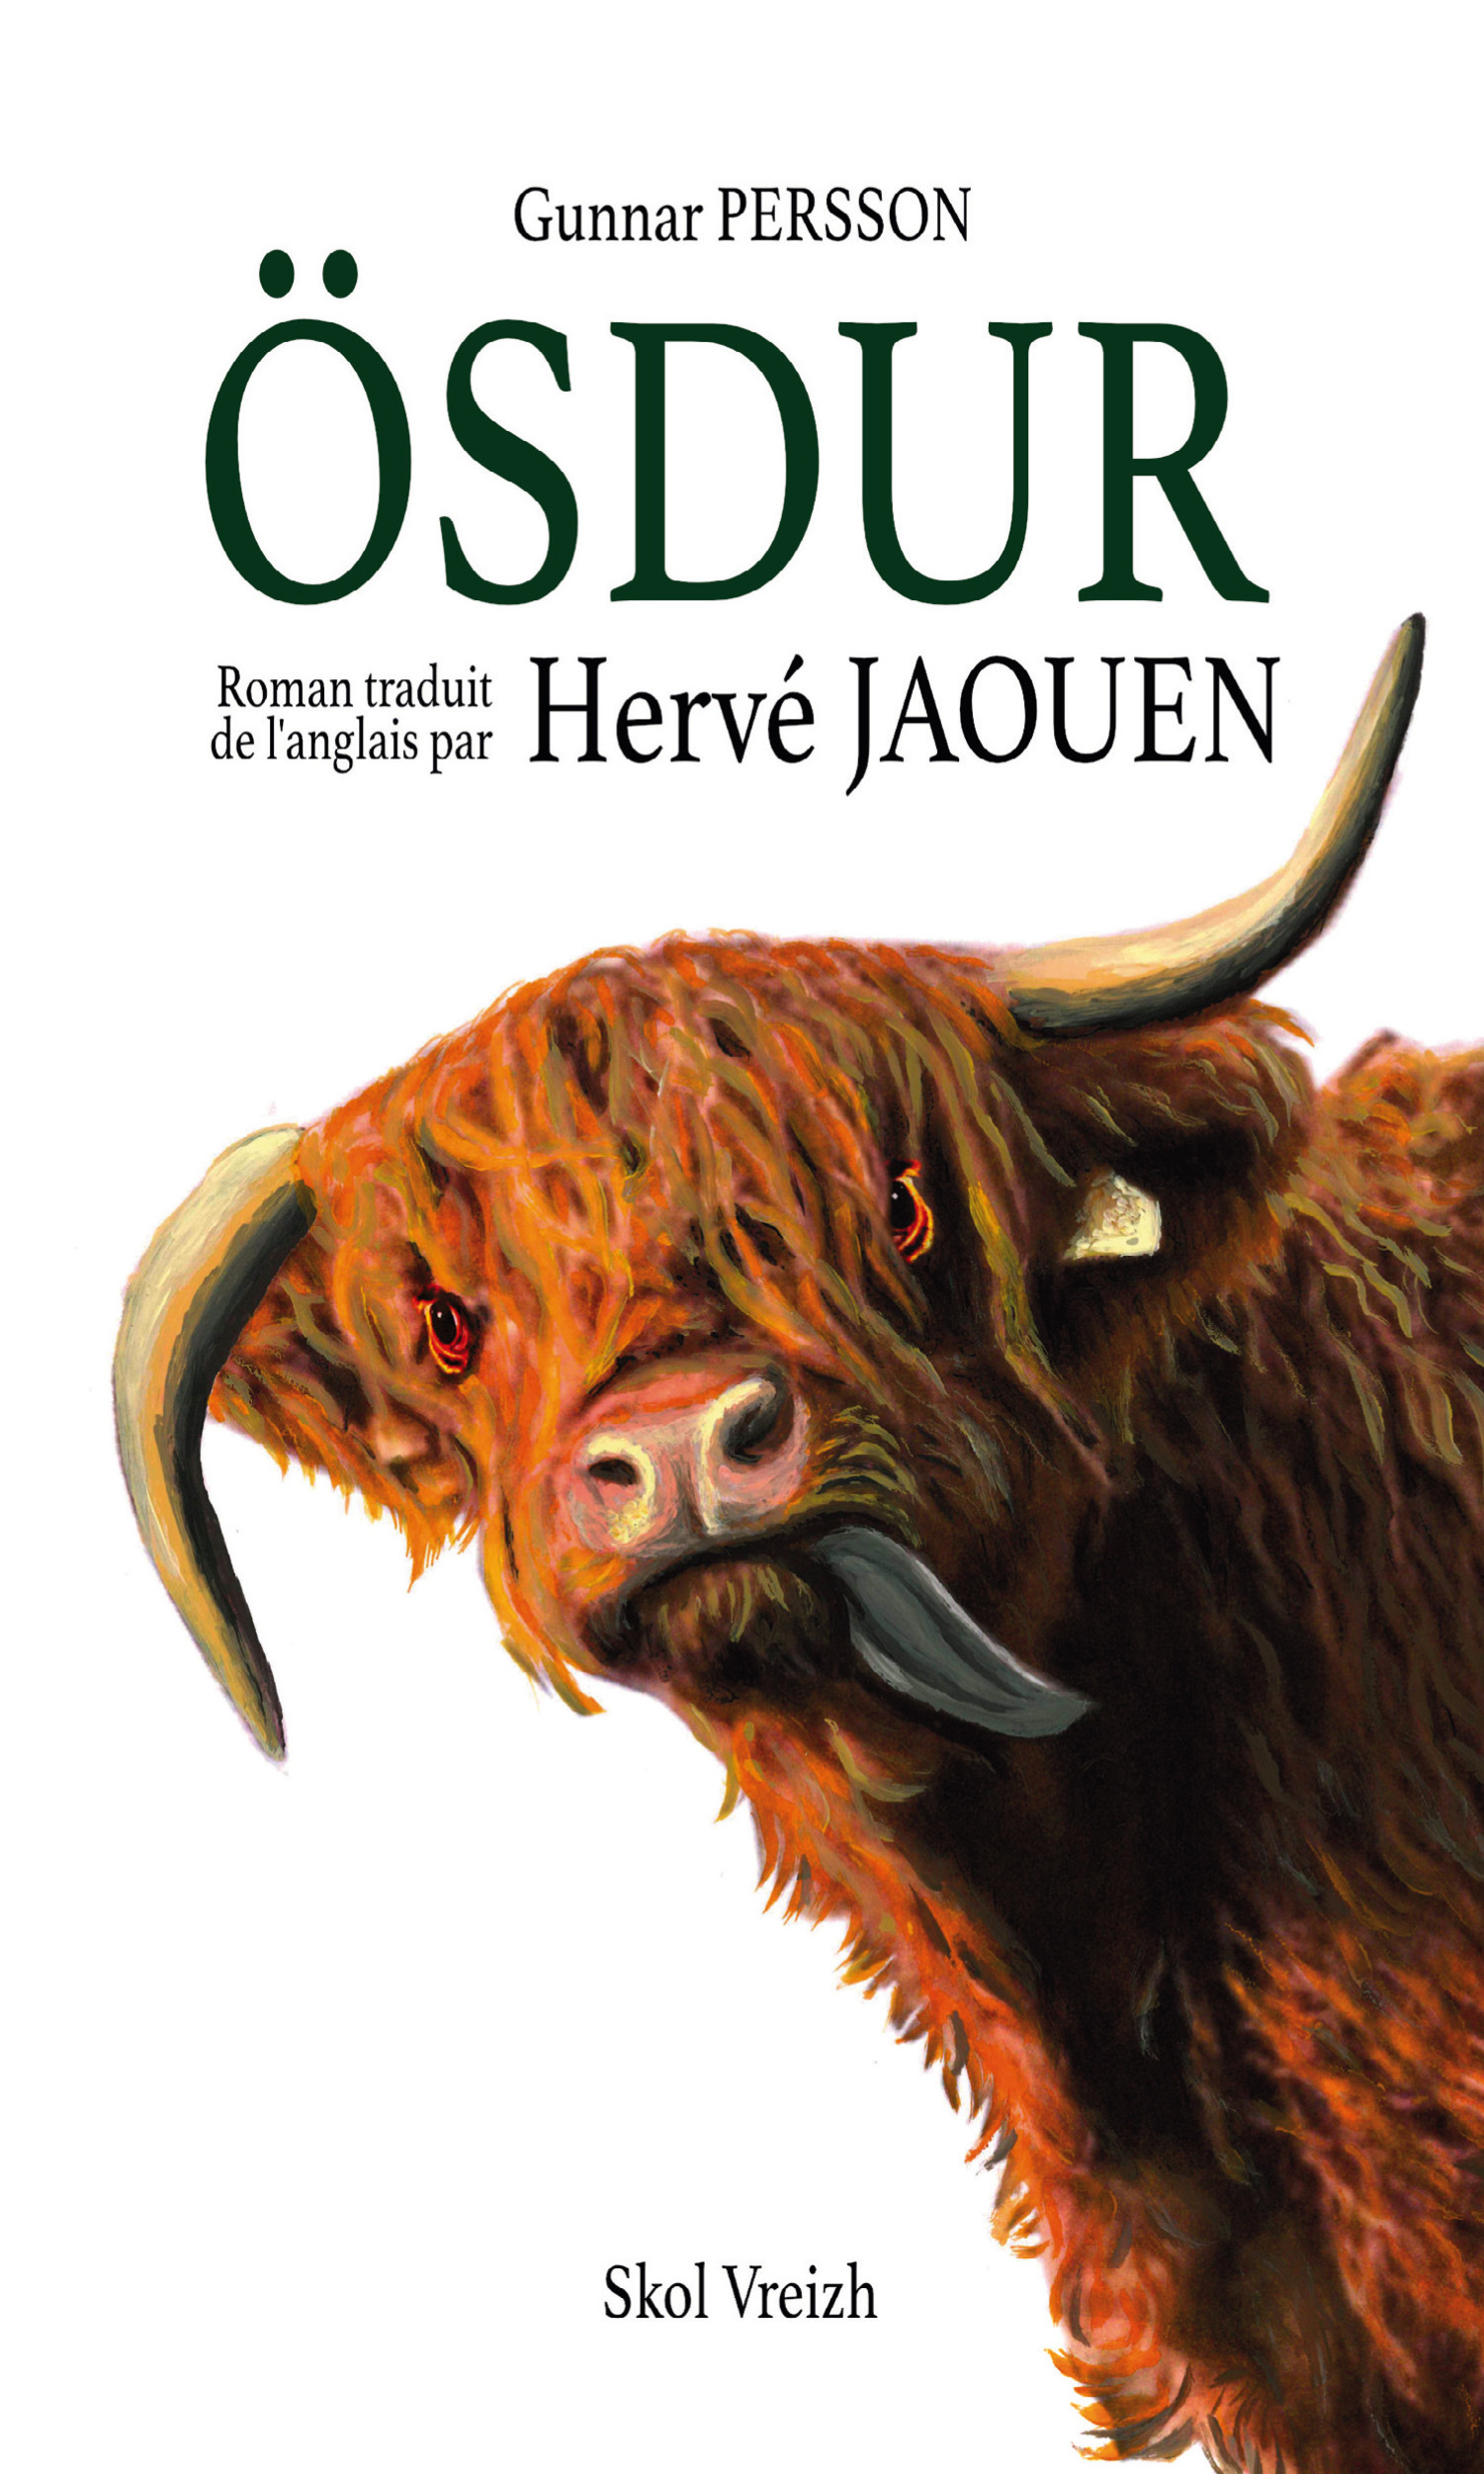 Ösdur - Gunnar Persson - traduction Hervé Jaouen